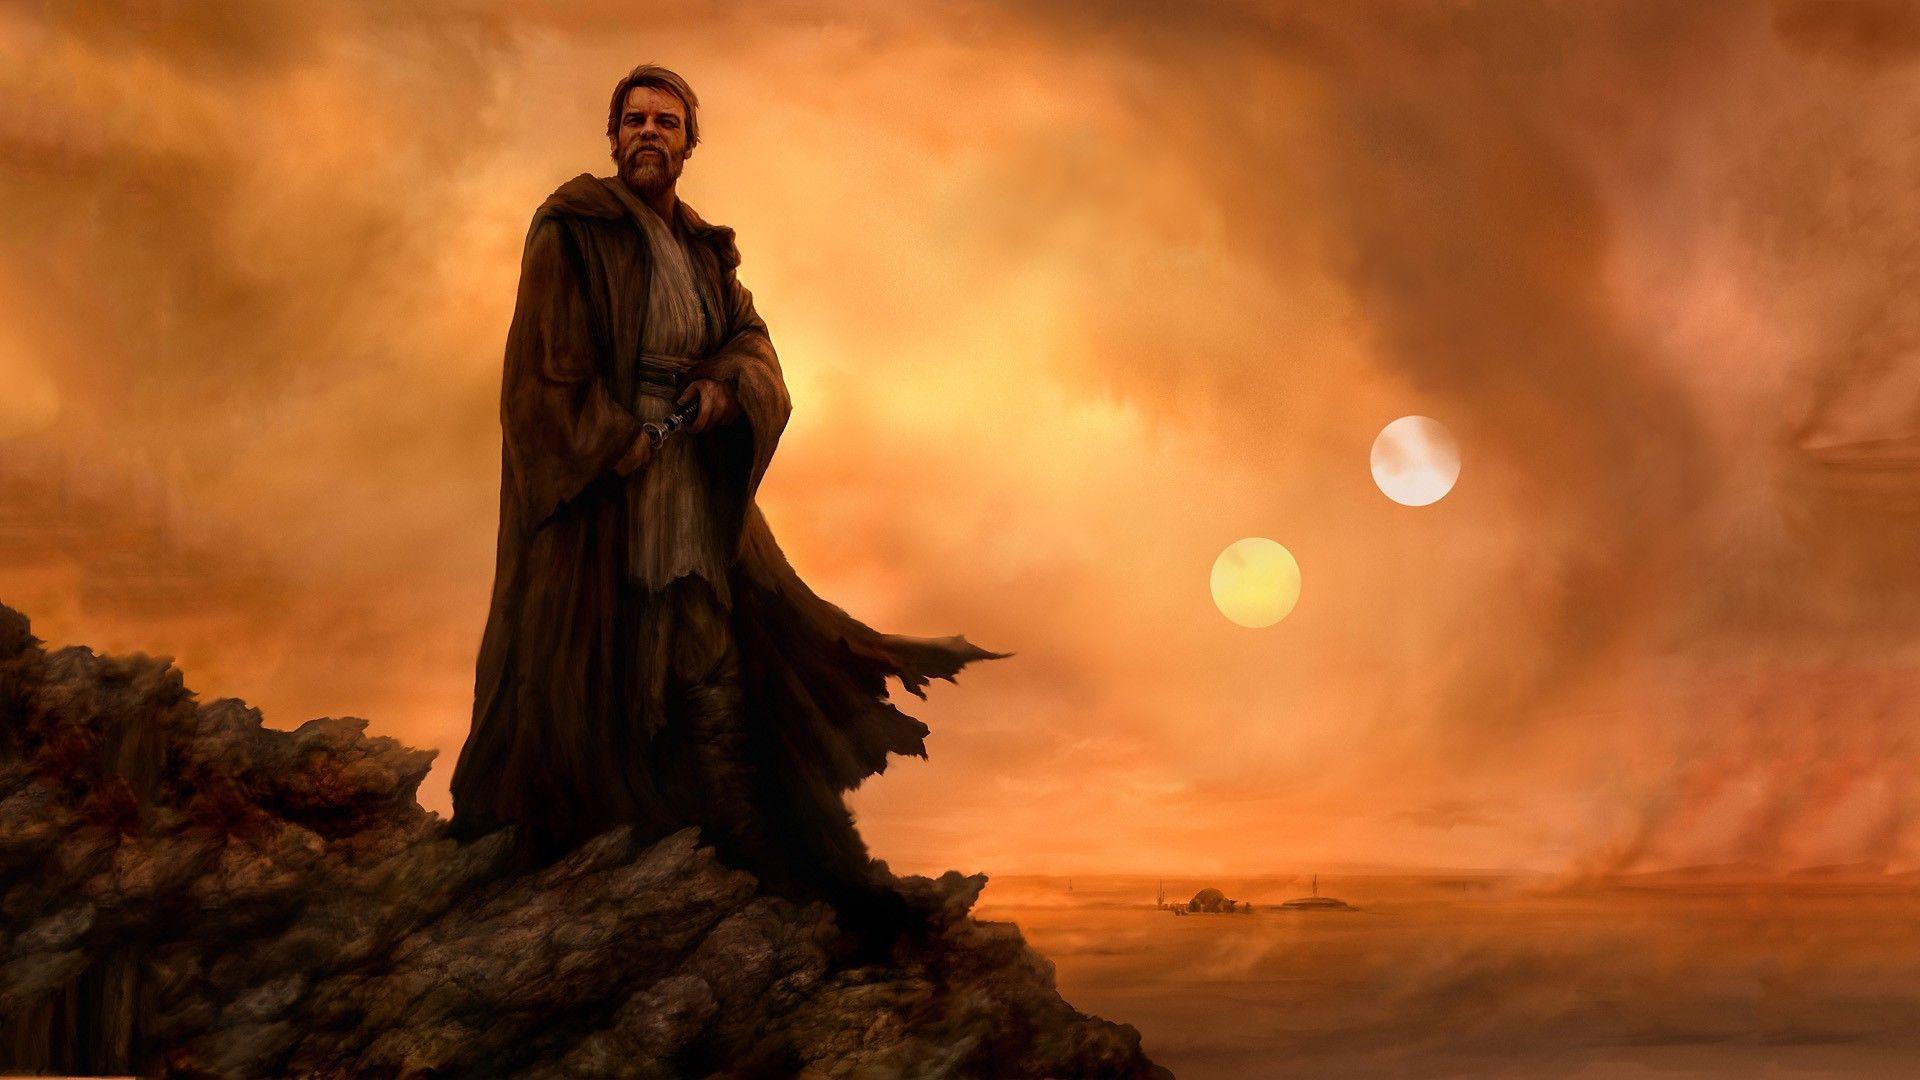 Tatooine Desert Scene  Star Wars Battlefront  Live Wallpaper 4K   YouTube